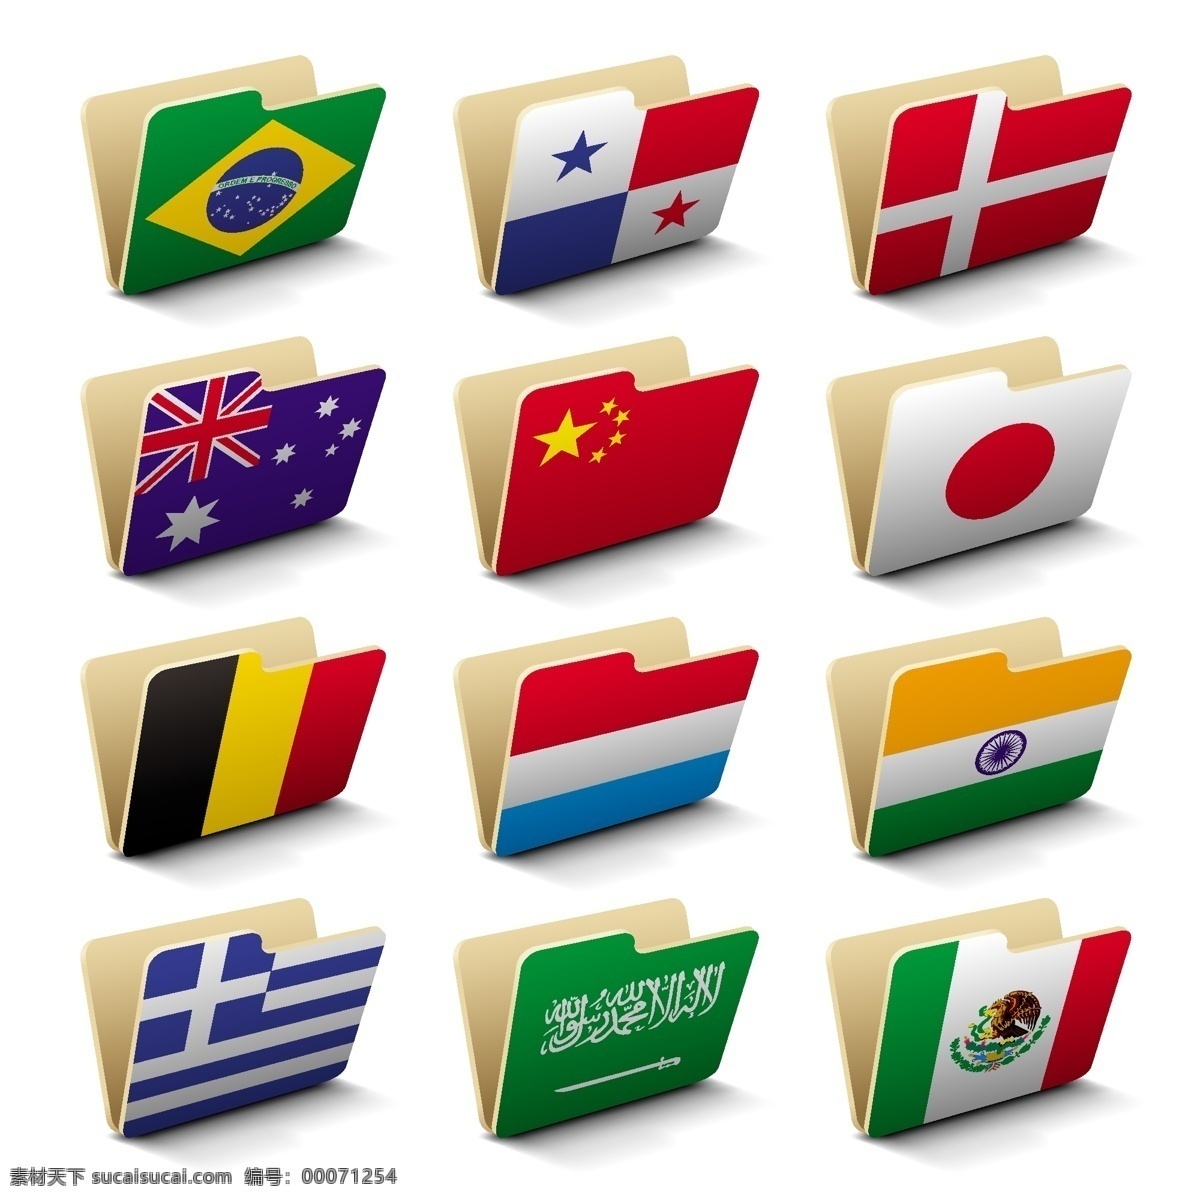 各国 国旗 文件夹 矢量 eps格式 德国 法国 加拿大 美国 日本 矢量素材 中国 英国 西班牙 矢量图 其他矢量图